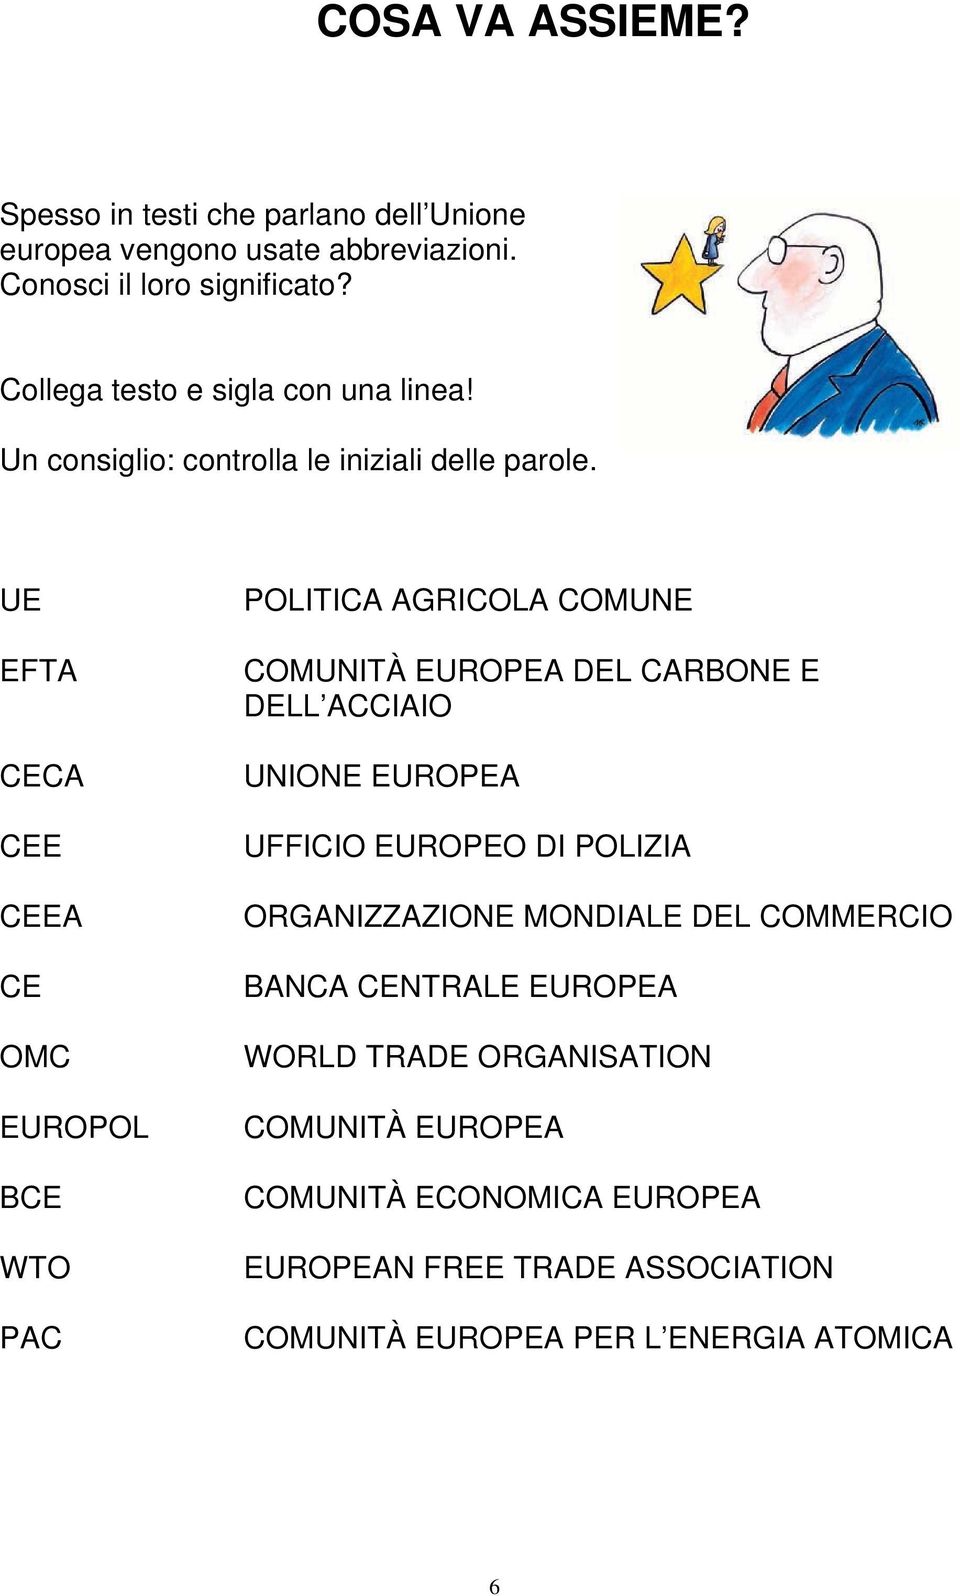 UE EFTA CECA CEE CEEA CE OMC EUROPOL BCE WTO PAC POLITICA AGRICOLA COMUNE COMUNITÀ EUROPEA DEL CARBONE E DELL ACCIAIO UNIONE EUROPEA UFFICIO